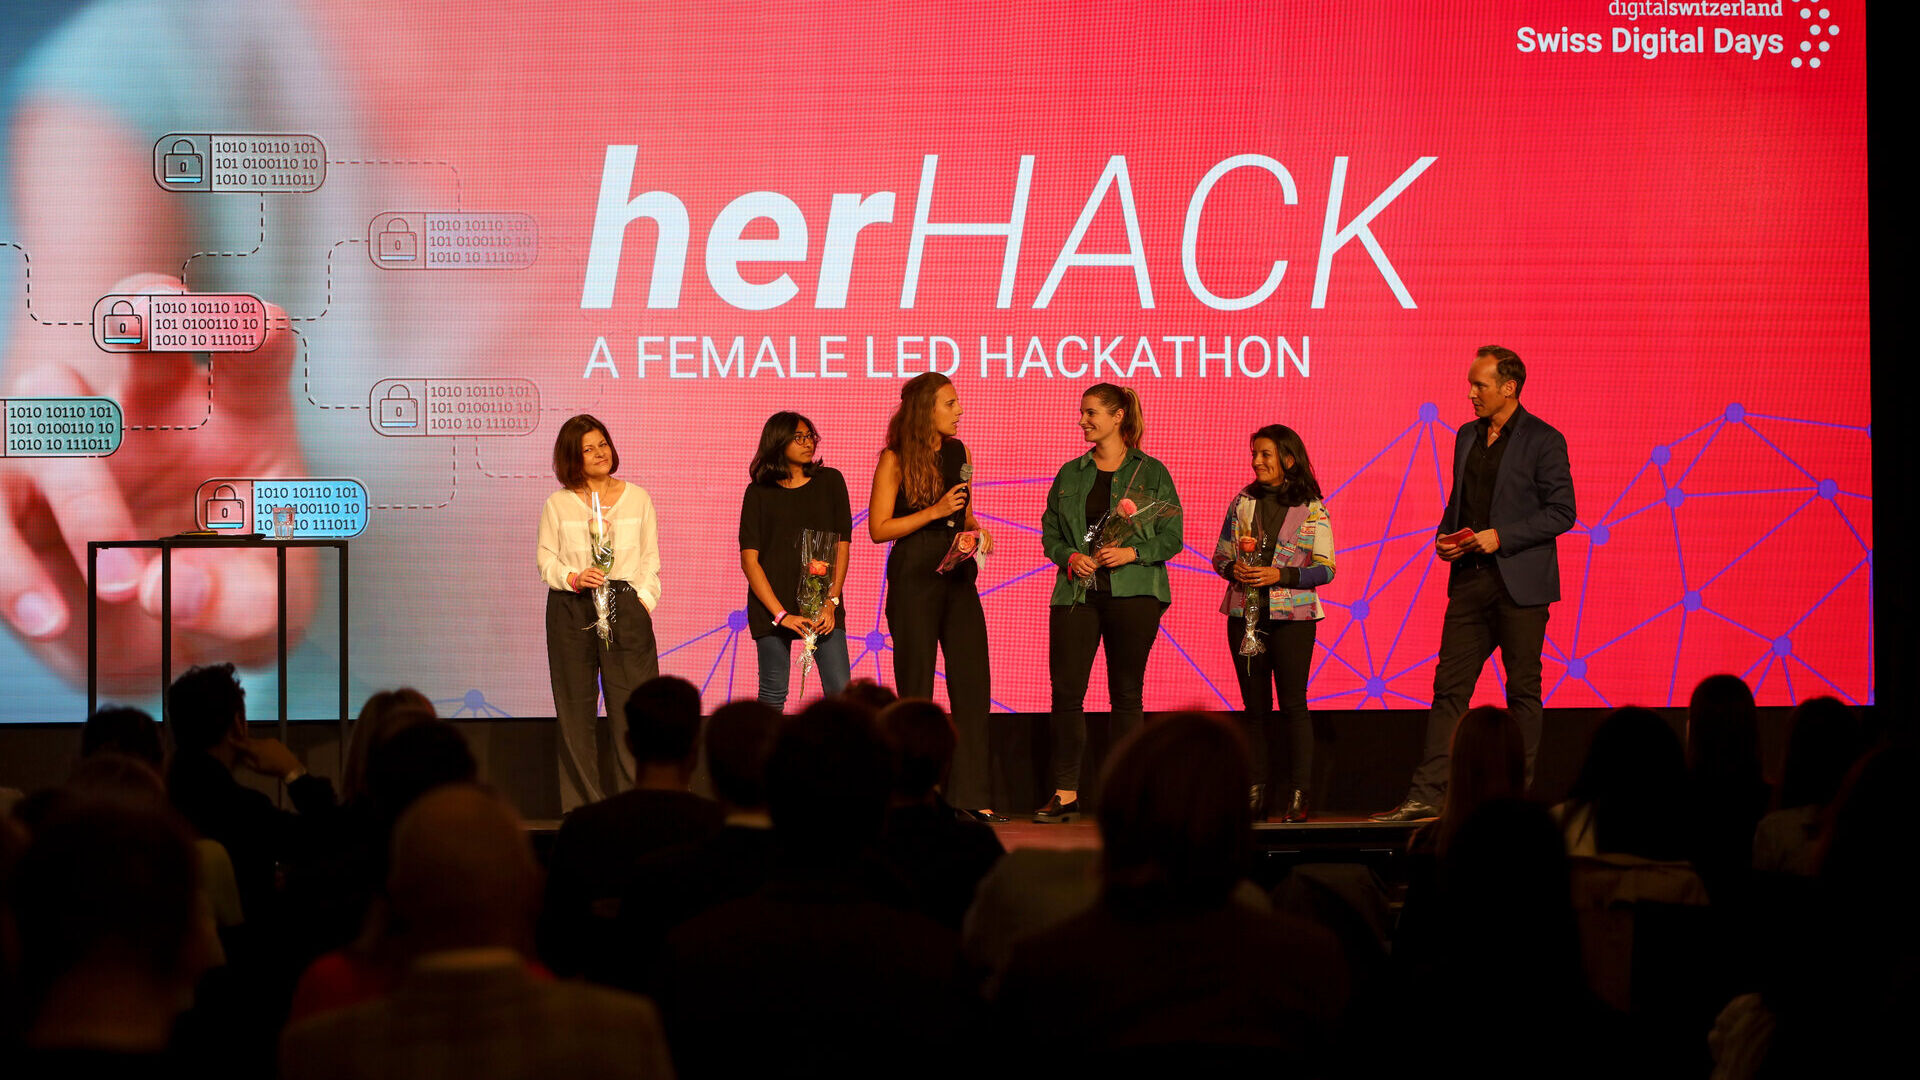 Swiss Digital Days: sự kiện cuối cùng của "Swiss Digital Days" 2022 tại Freiruum ở Zug (Zug) vào ngày 27 tháng XNUMX: lễ trao giải cuộc thi hackathon dành cho nữ "herHACK" với chiến thắng của Greender